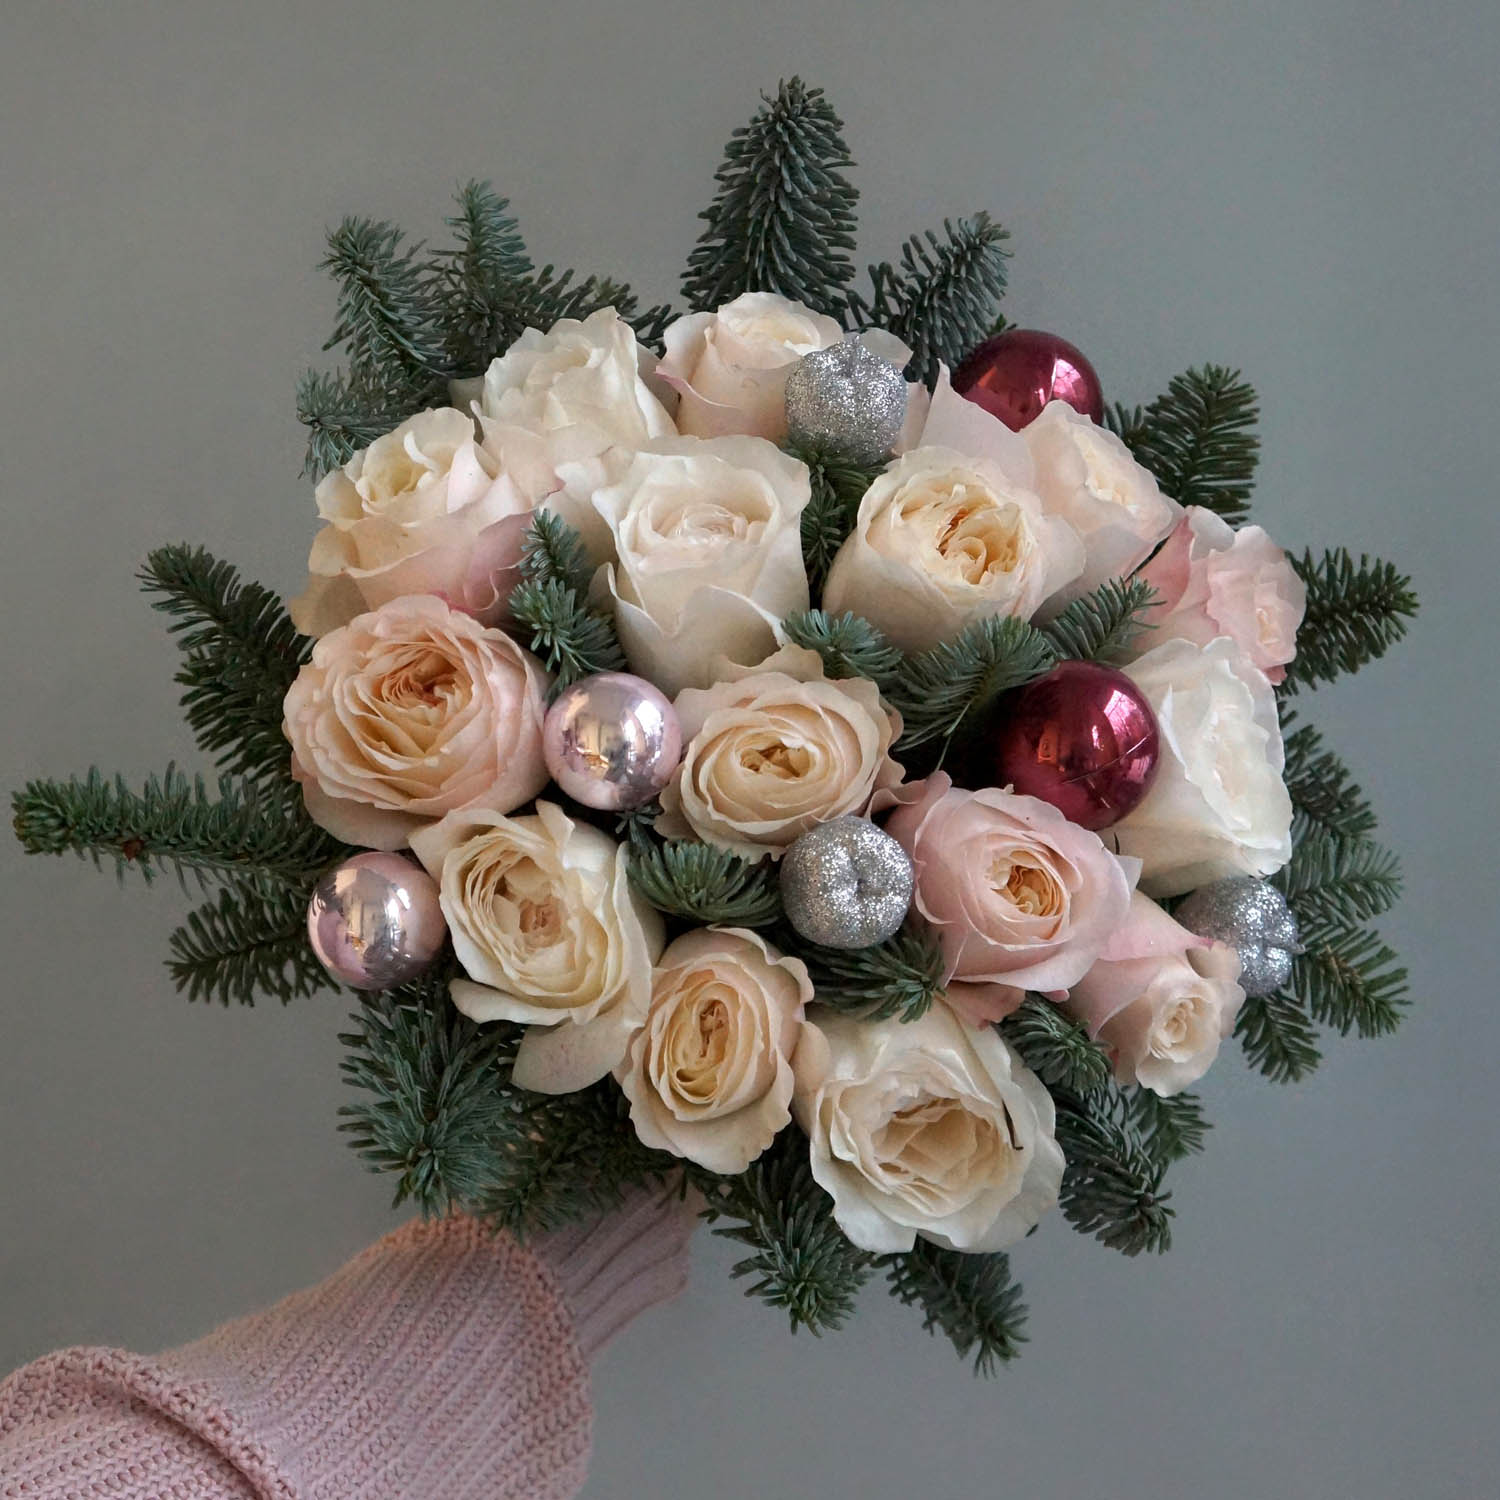 новогодний букет с нобилисом и персиковыми розами с декором